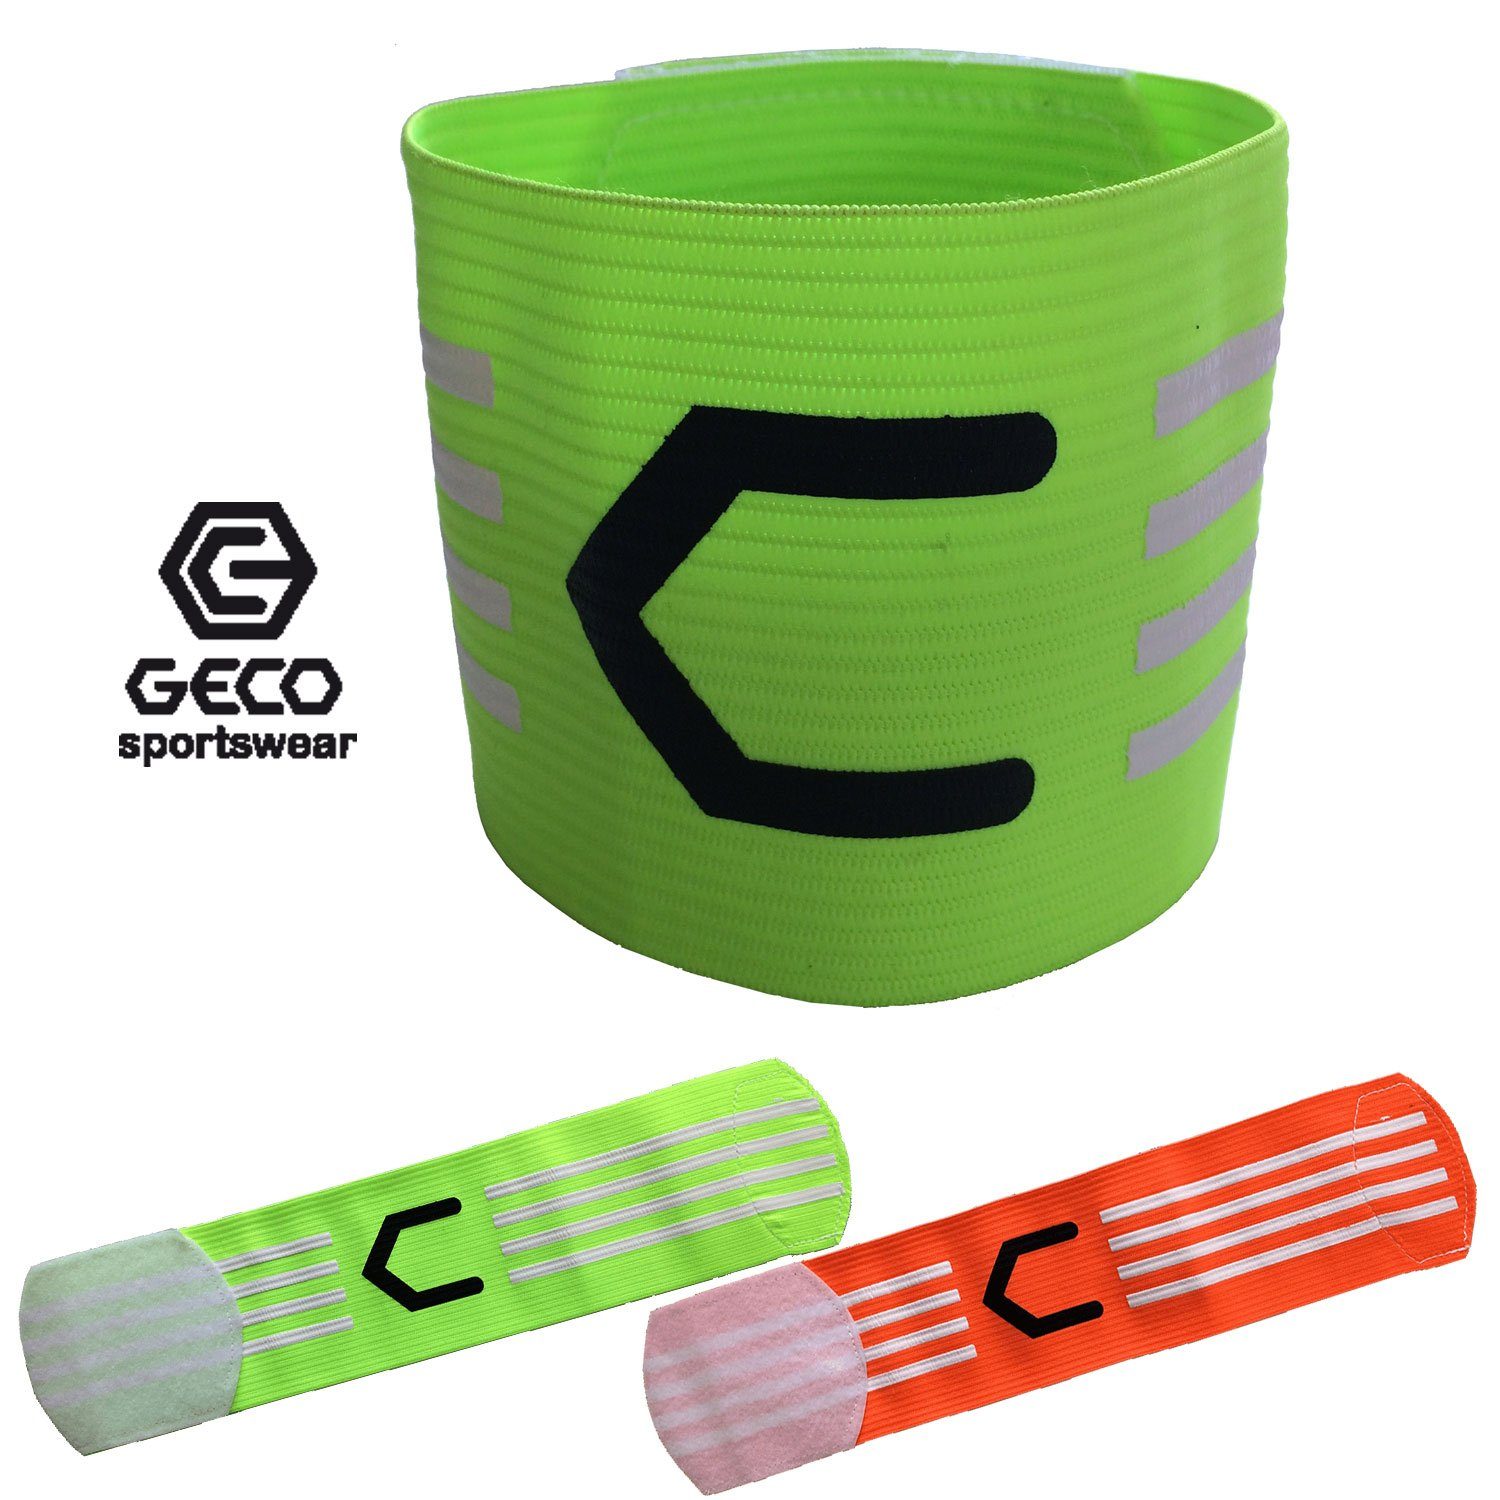 Geco Sportswear Kapitänsbinde Geco Kapitänsbinde Fußball NEON grün und orange, neon Farben grün oder orange